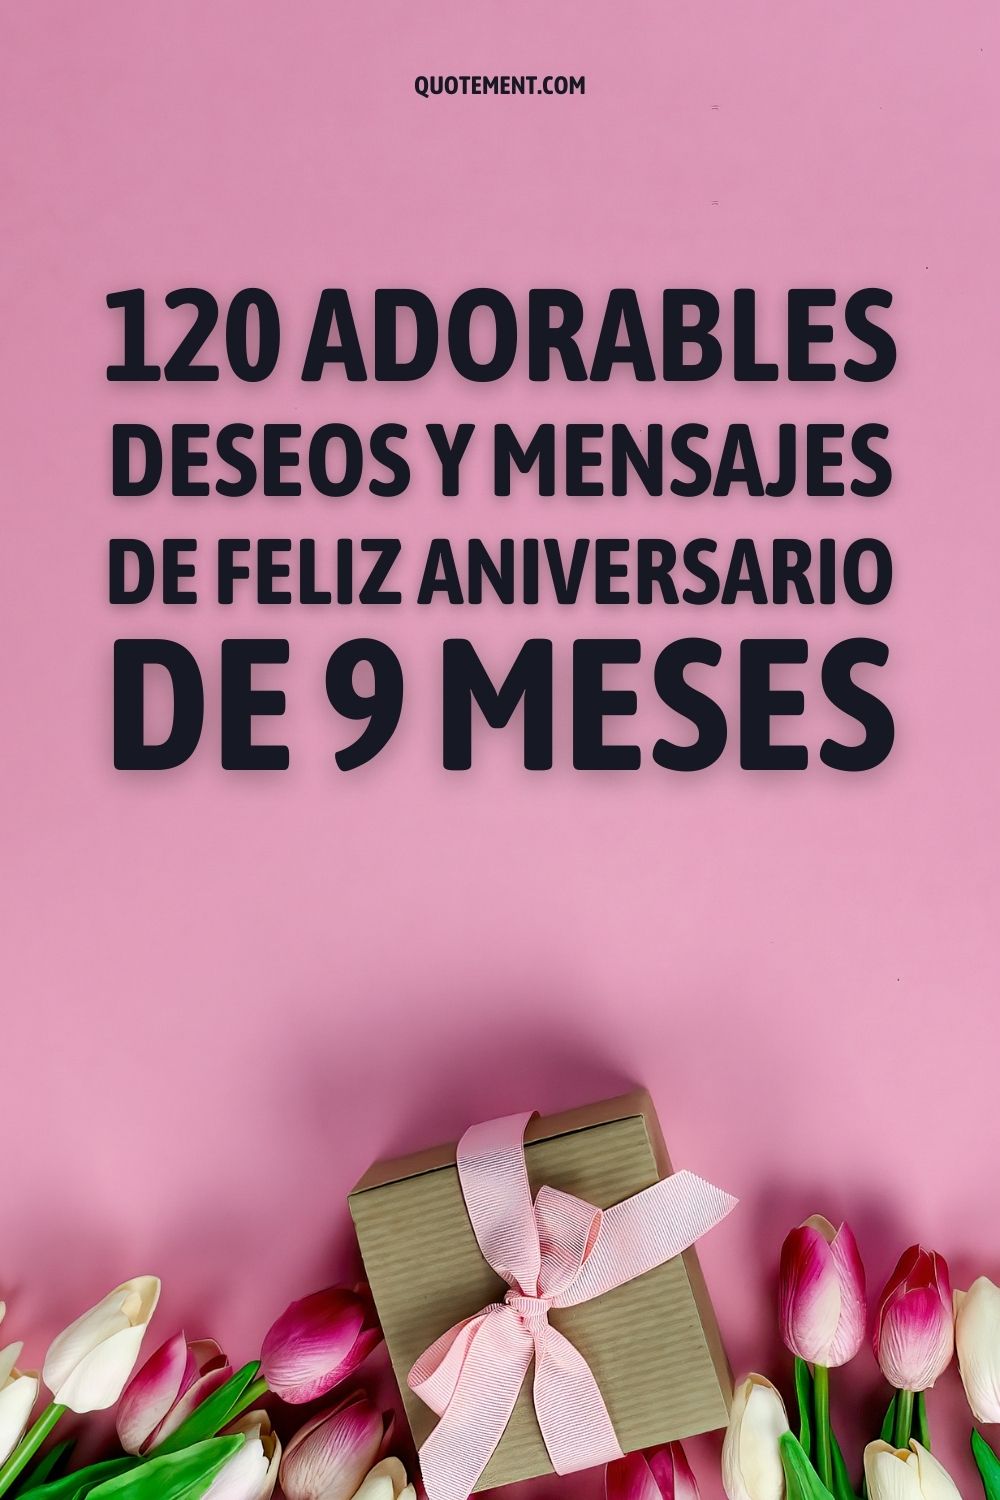 120 adorables deseos y mensajes de feliz aniversario de 9 meses pinterest